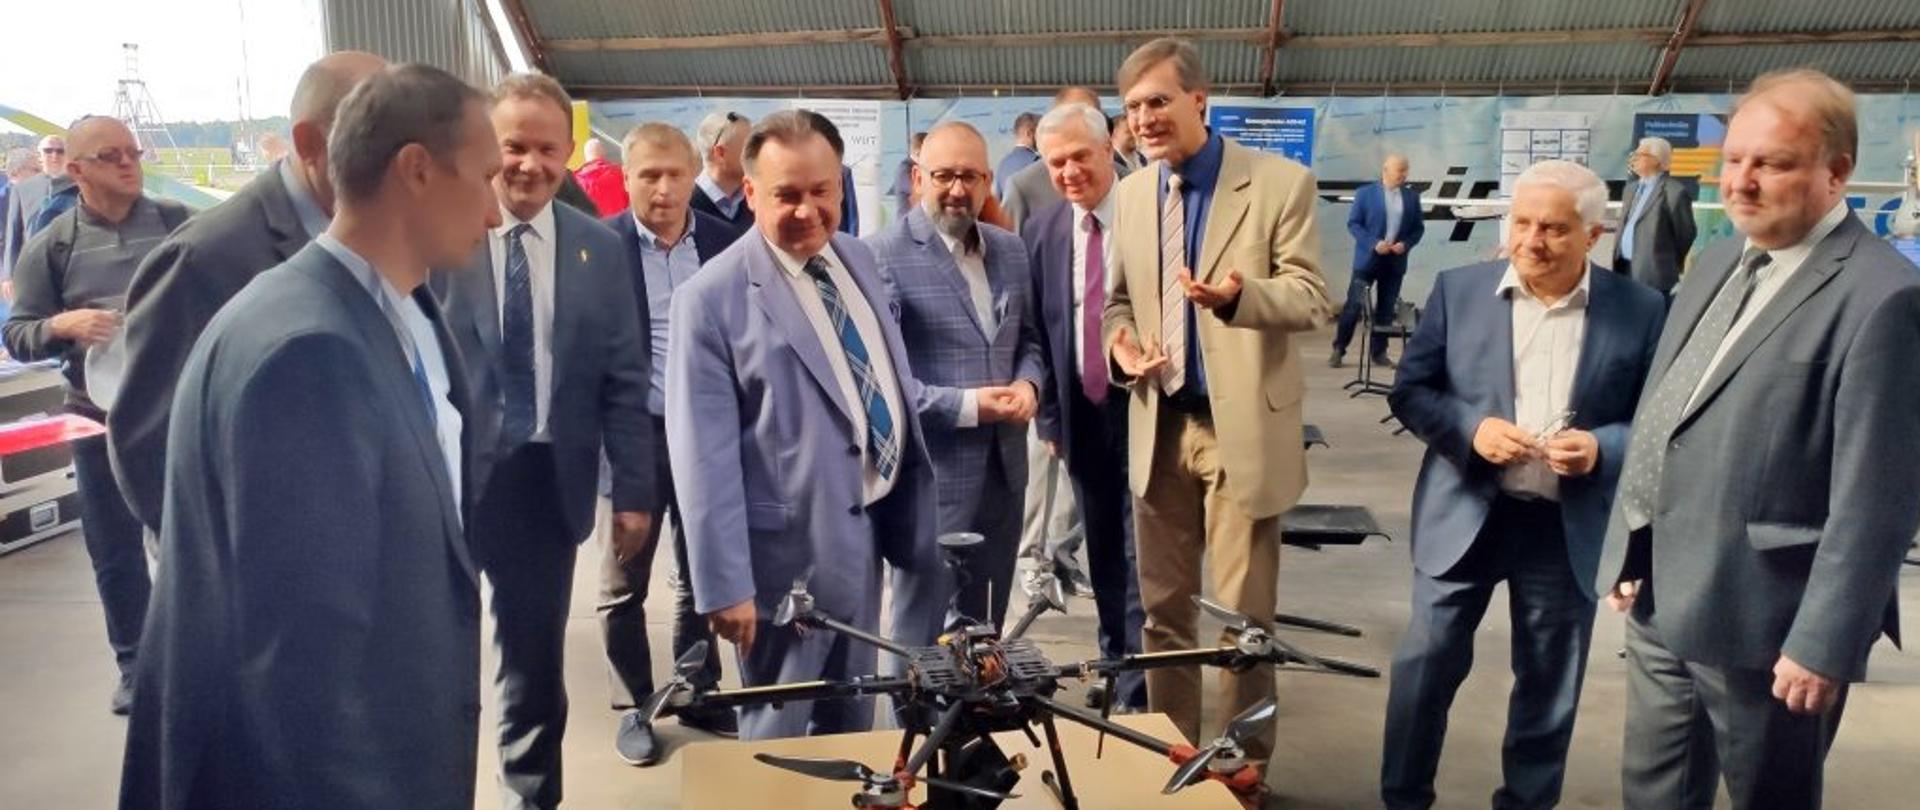 Zdjęcie przedstawia uczestników uroczystości oraz pracowników Politechniki Warszawskiej prezentujących gościom możliwości technologiczne latających urządzeń bezzałogowych